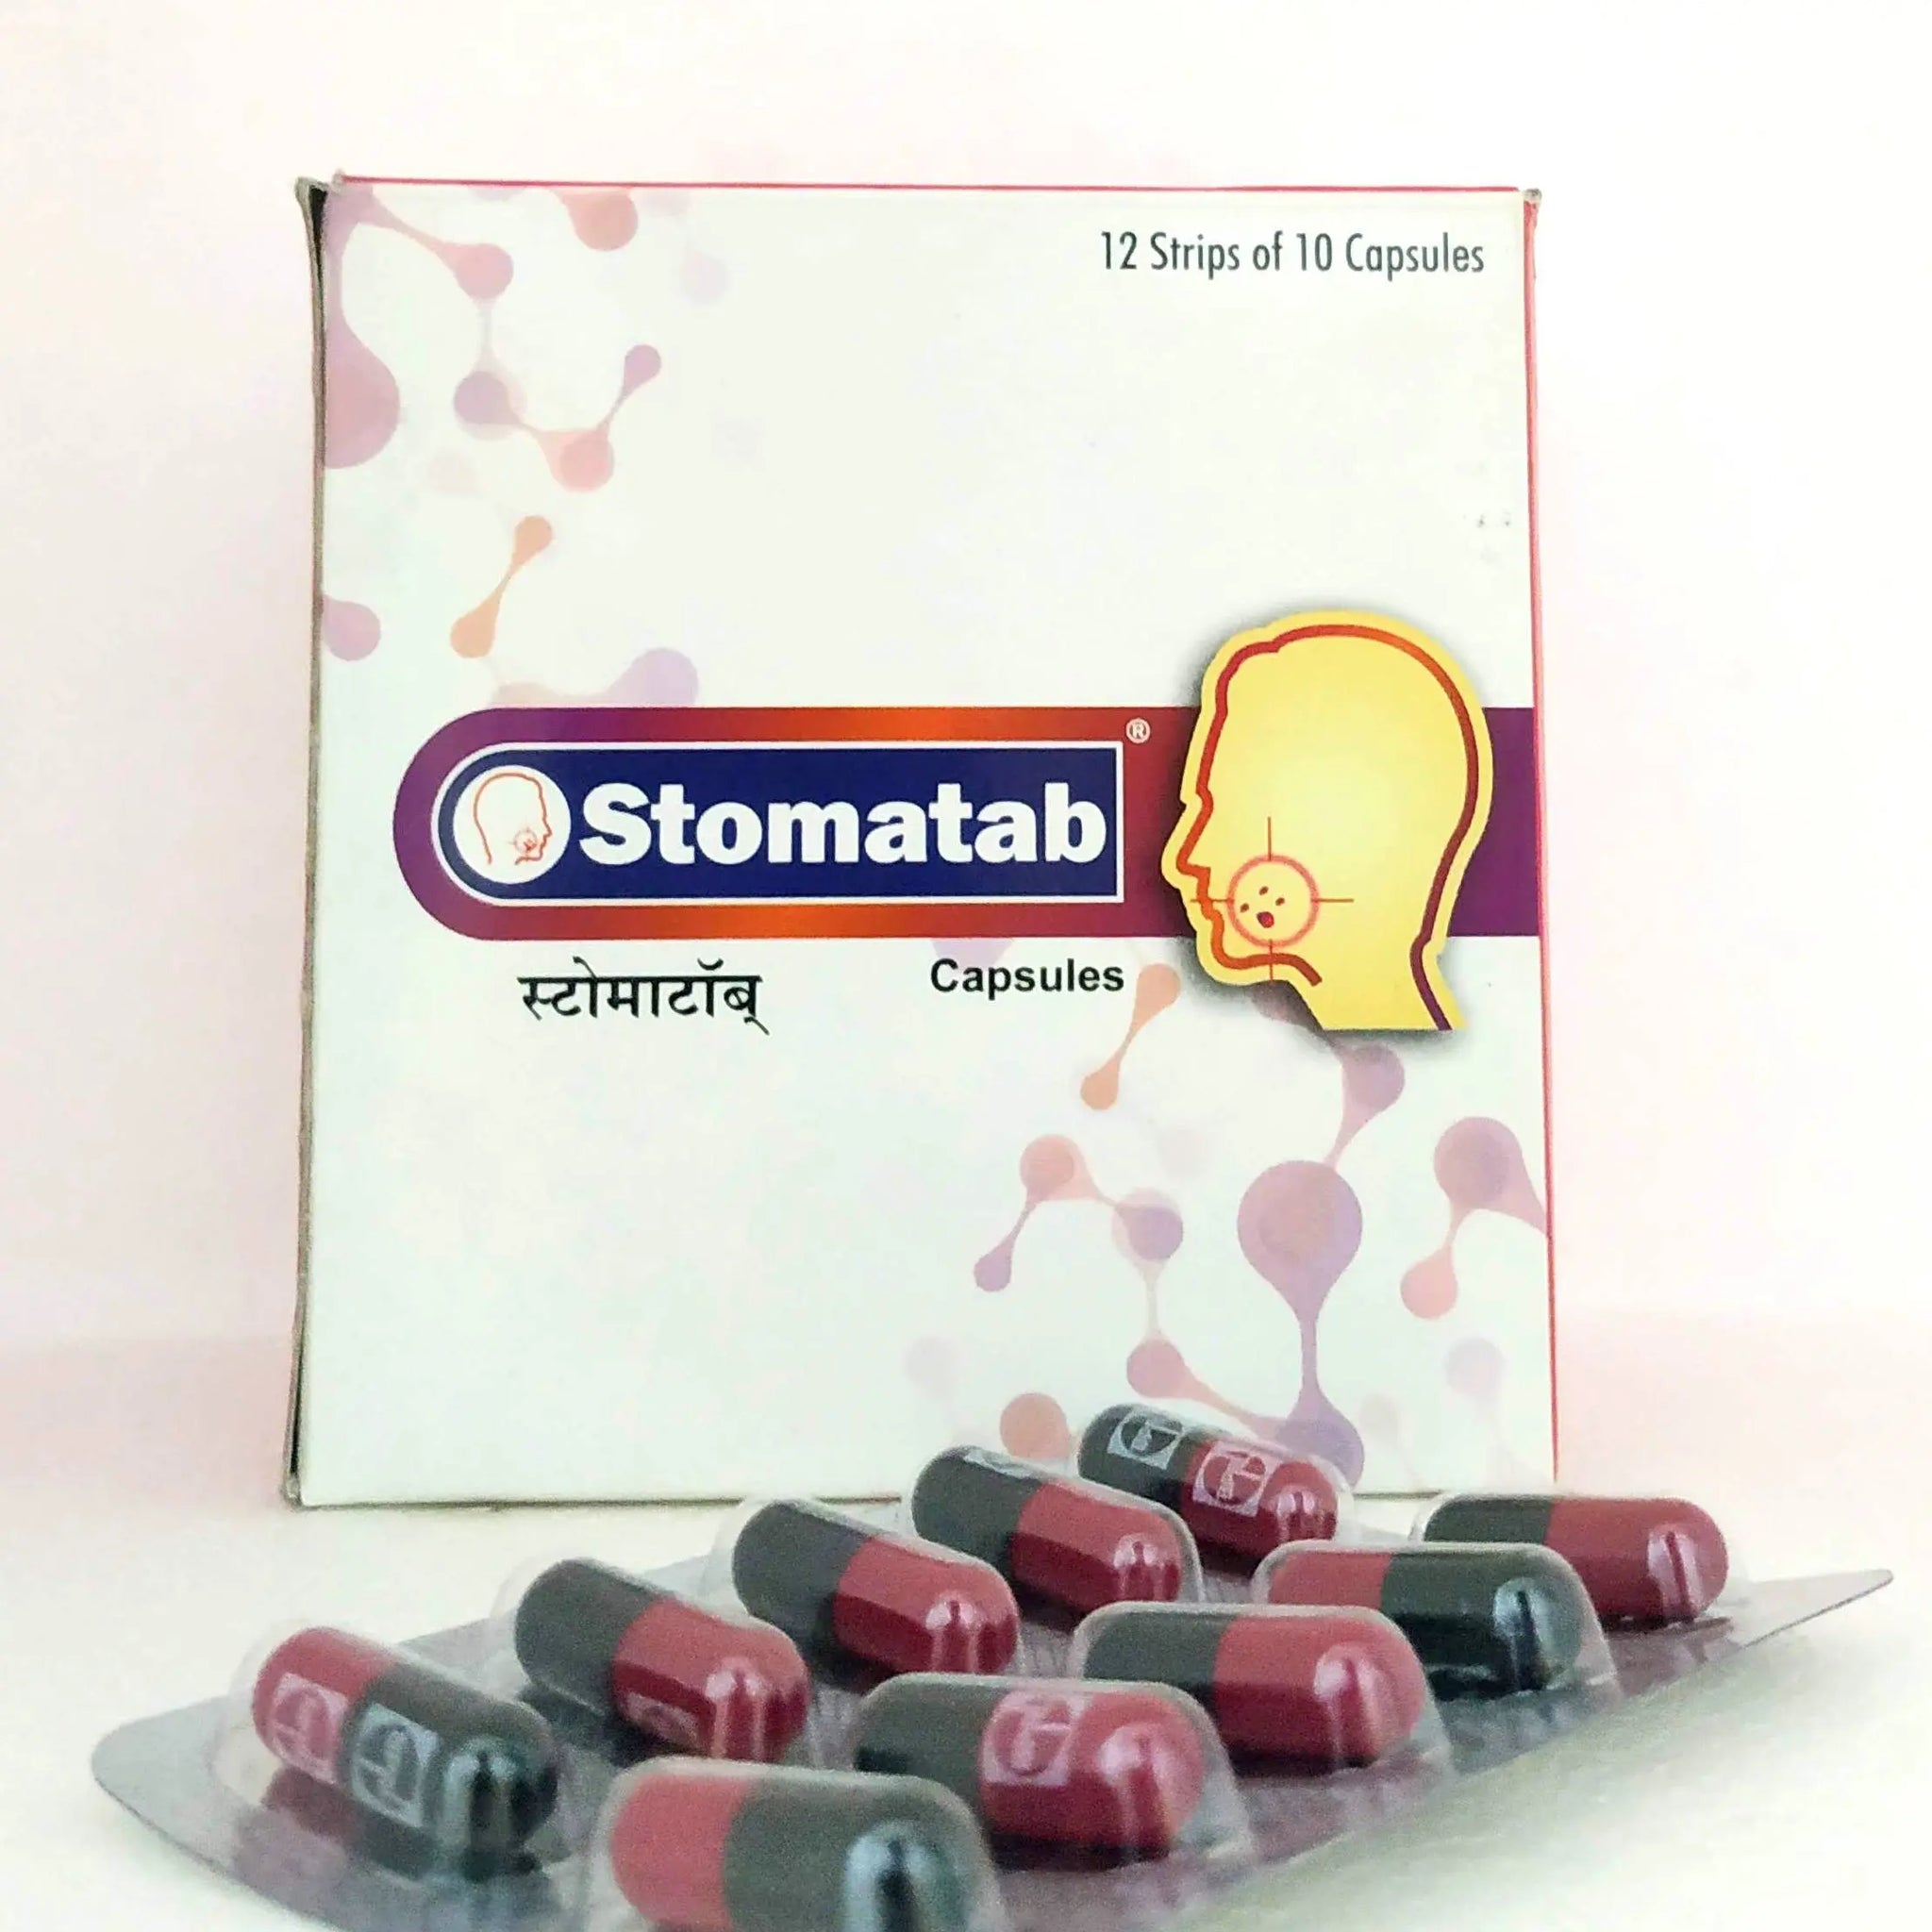 Stomatab capsules - 10capsules Sagar